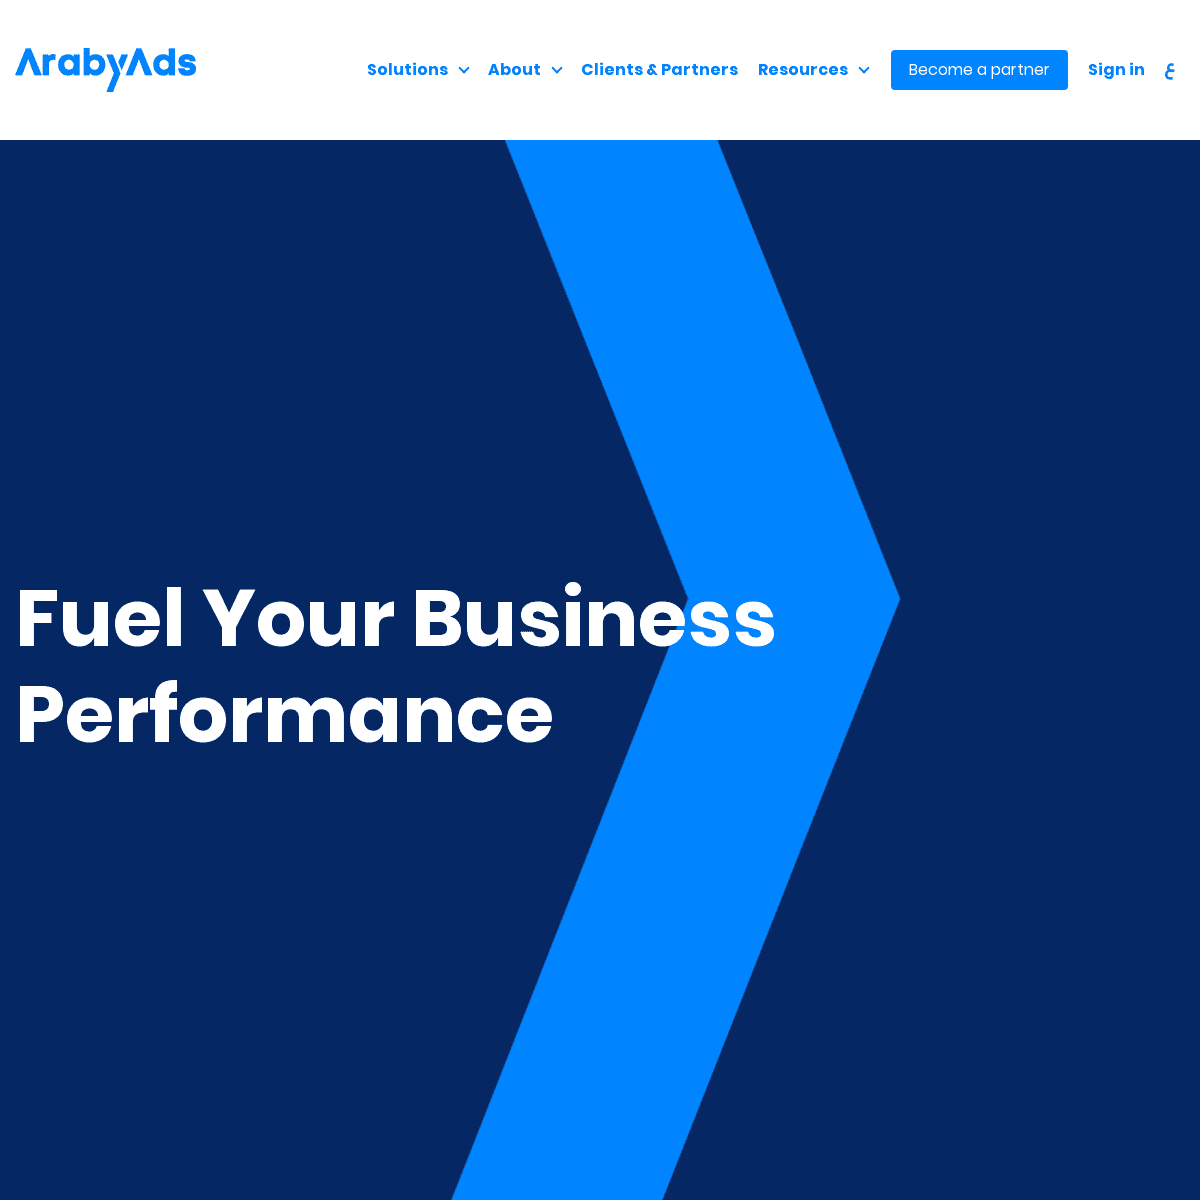 A complete backup of arabyads.com